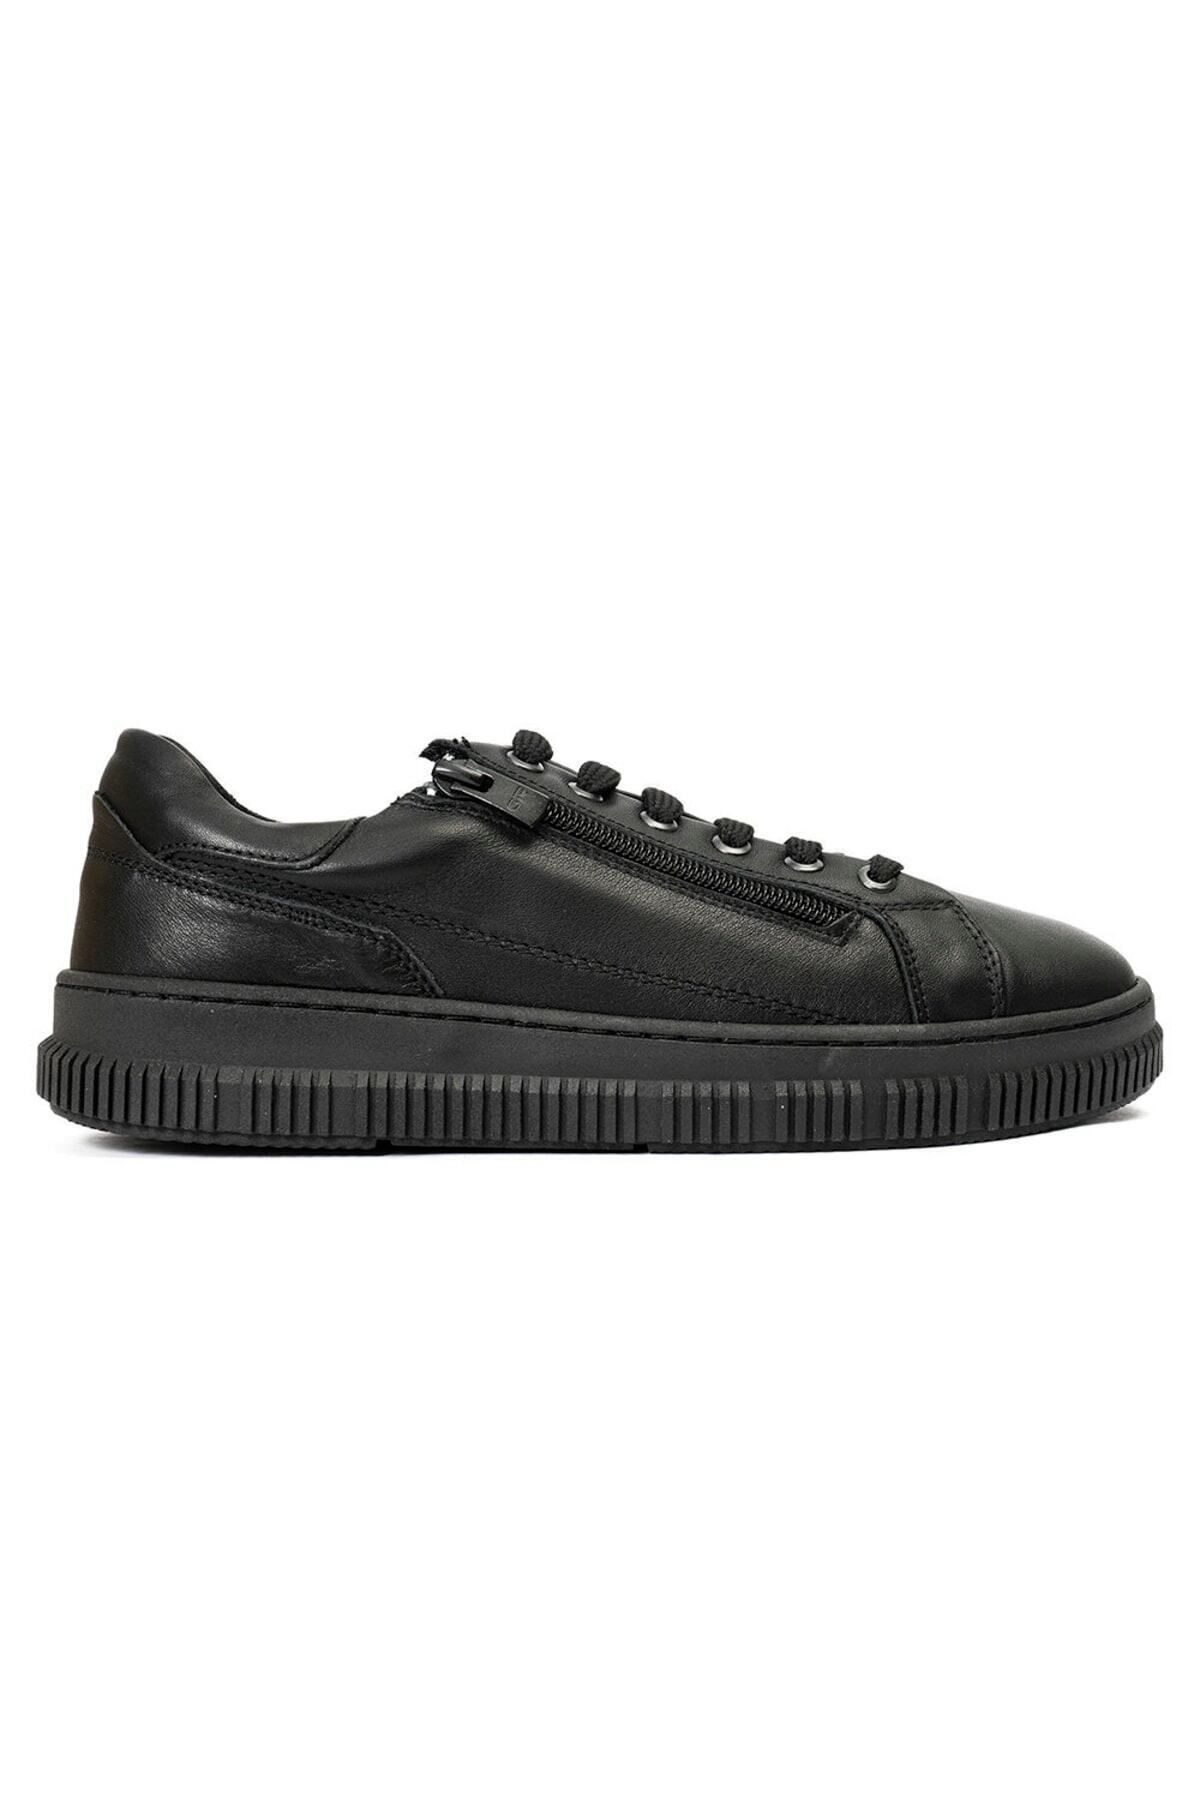 Greyder Kadın Siyah Hakiki Deri Sneaker Ayakkabı 2k2ca72100